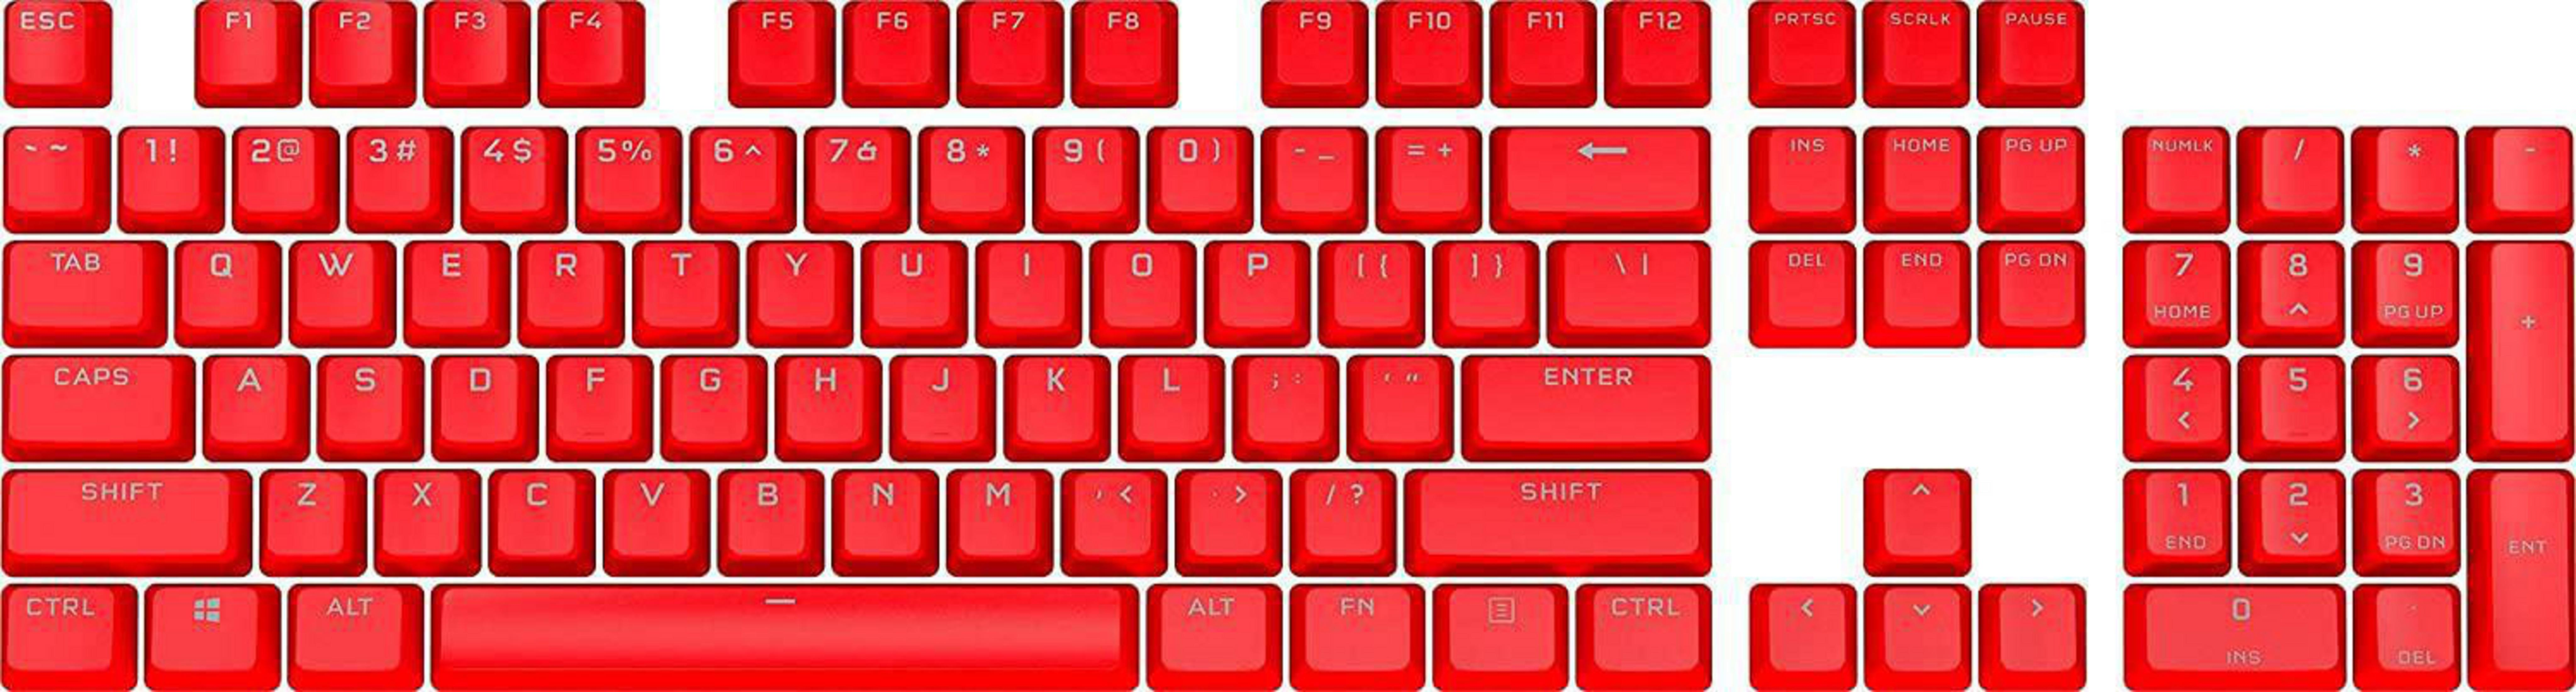 RED K, PBT KEYCAP Gaming PRO MOD CH-9911020-DE DOUBLE-SHOT Tastatur CORSAIR